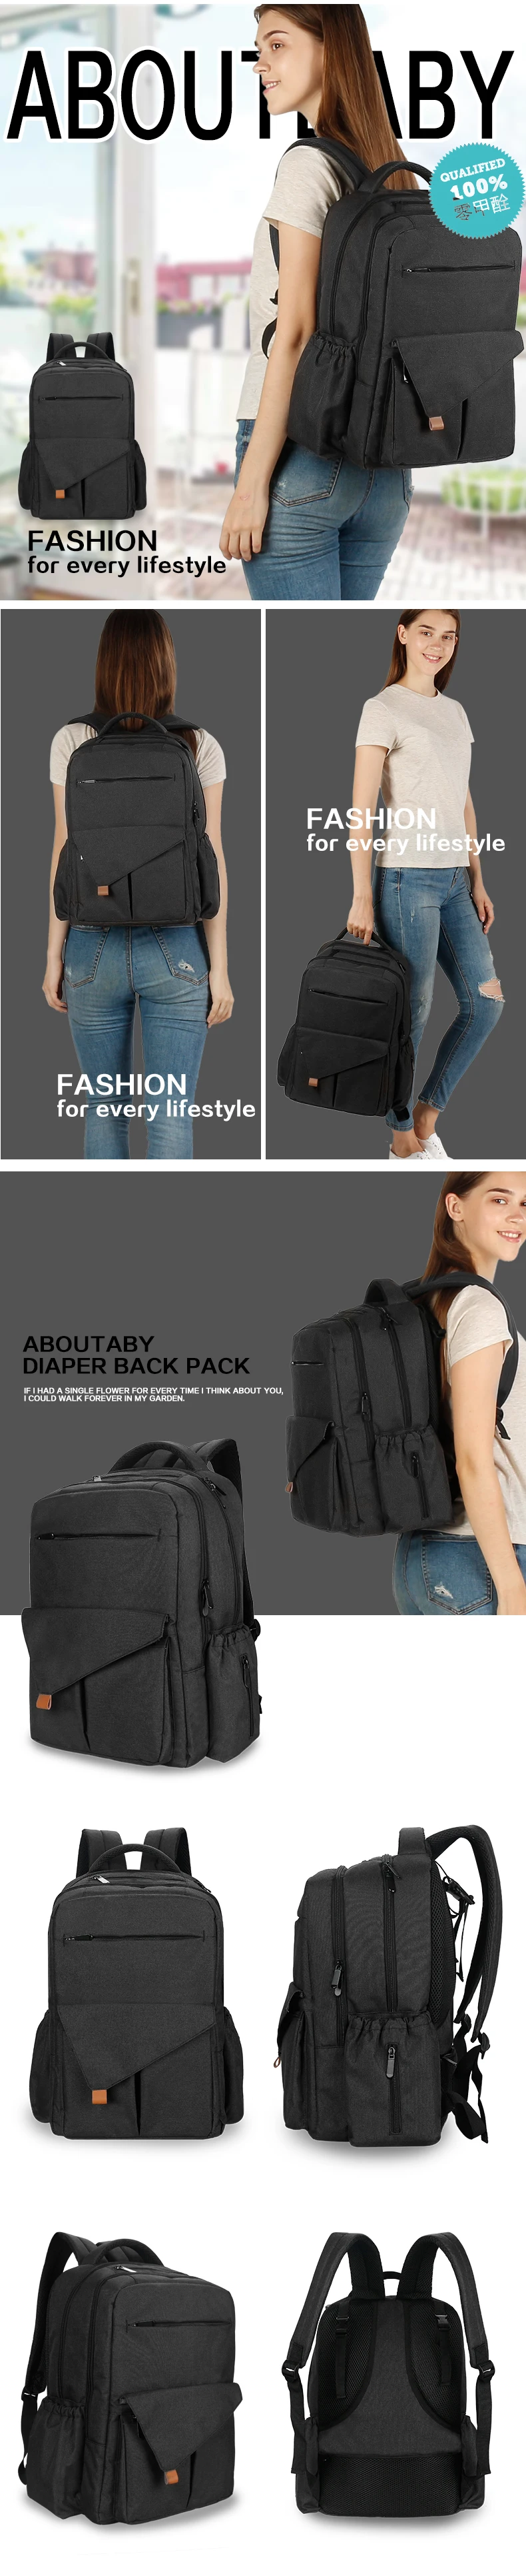 2018 новейшая мода Мумия Материнство сумка мульти-функция пеленки сумка рюкзак подгузник Детская сумка с коляской ремни для ухода за